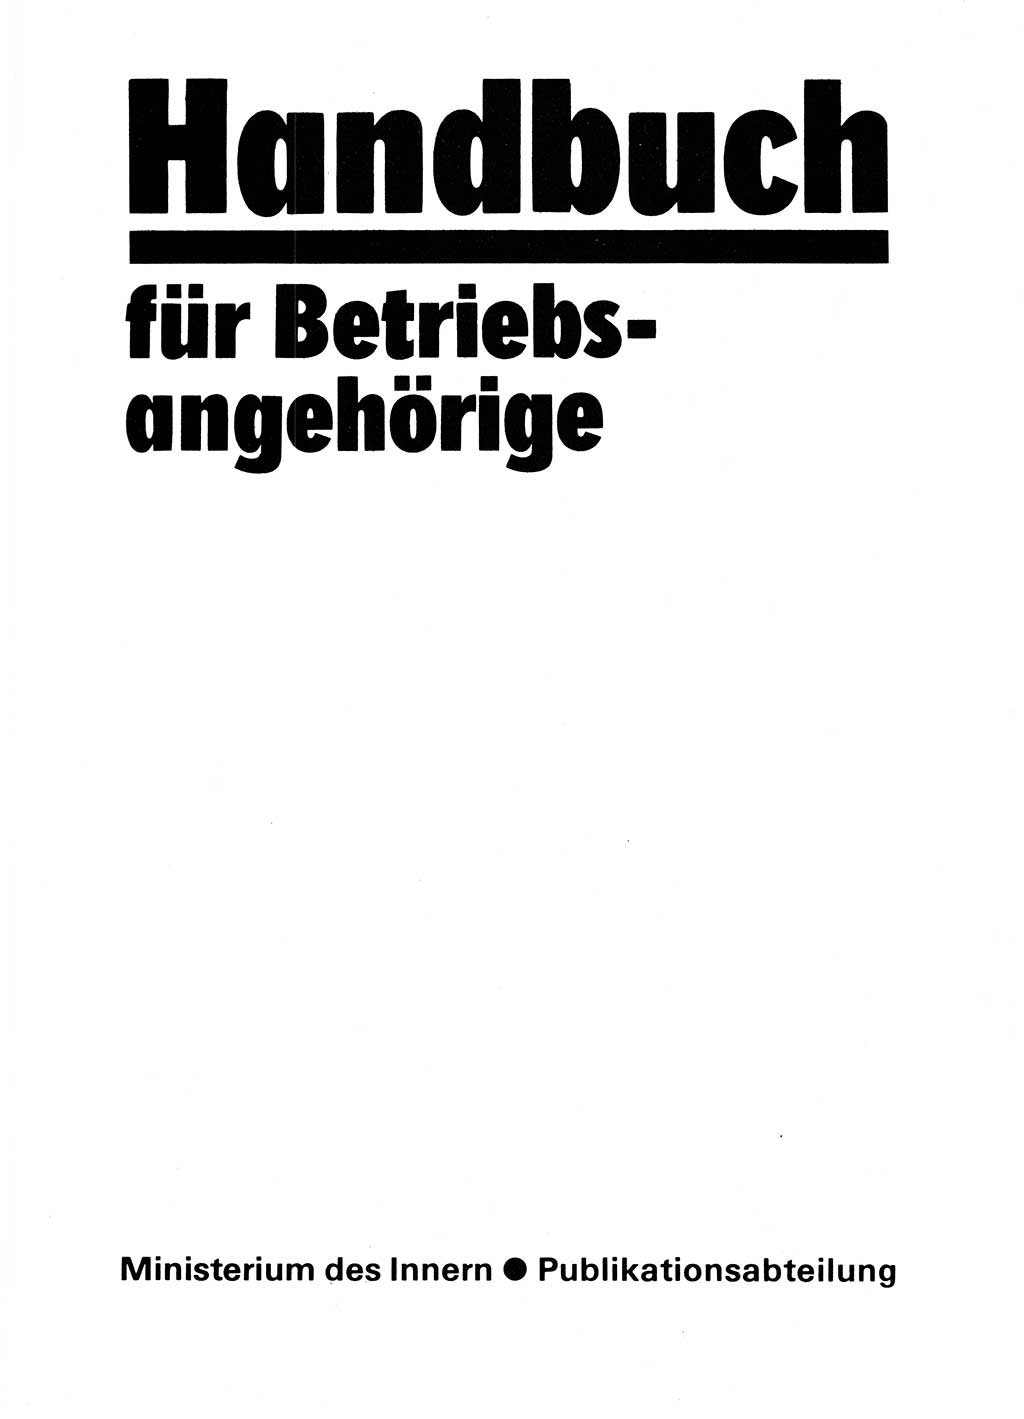 Handbuch für Betriebsangehörige, Abteilung Strafvollzug (SV) [Ministerium des Innern (MdI) Deutsche Demokratische Republik (DDR)] 1981, Seite 3 (Hb. BA Abt. SV MdI DDR 1981, S. 3)